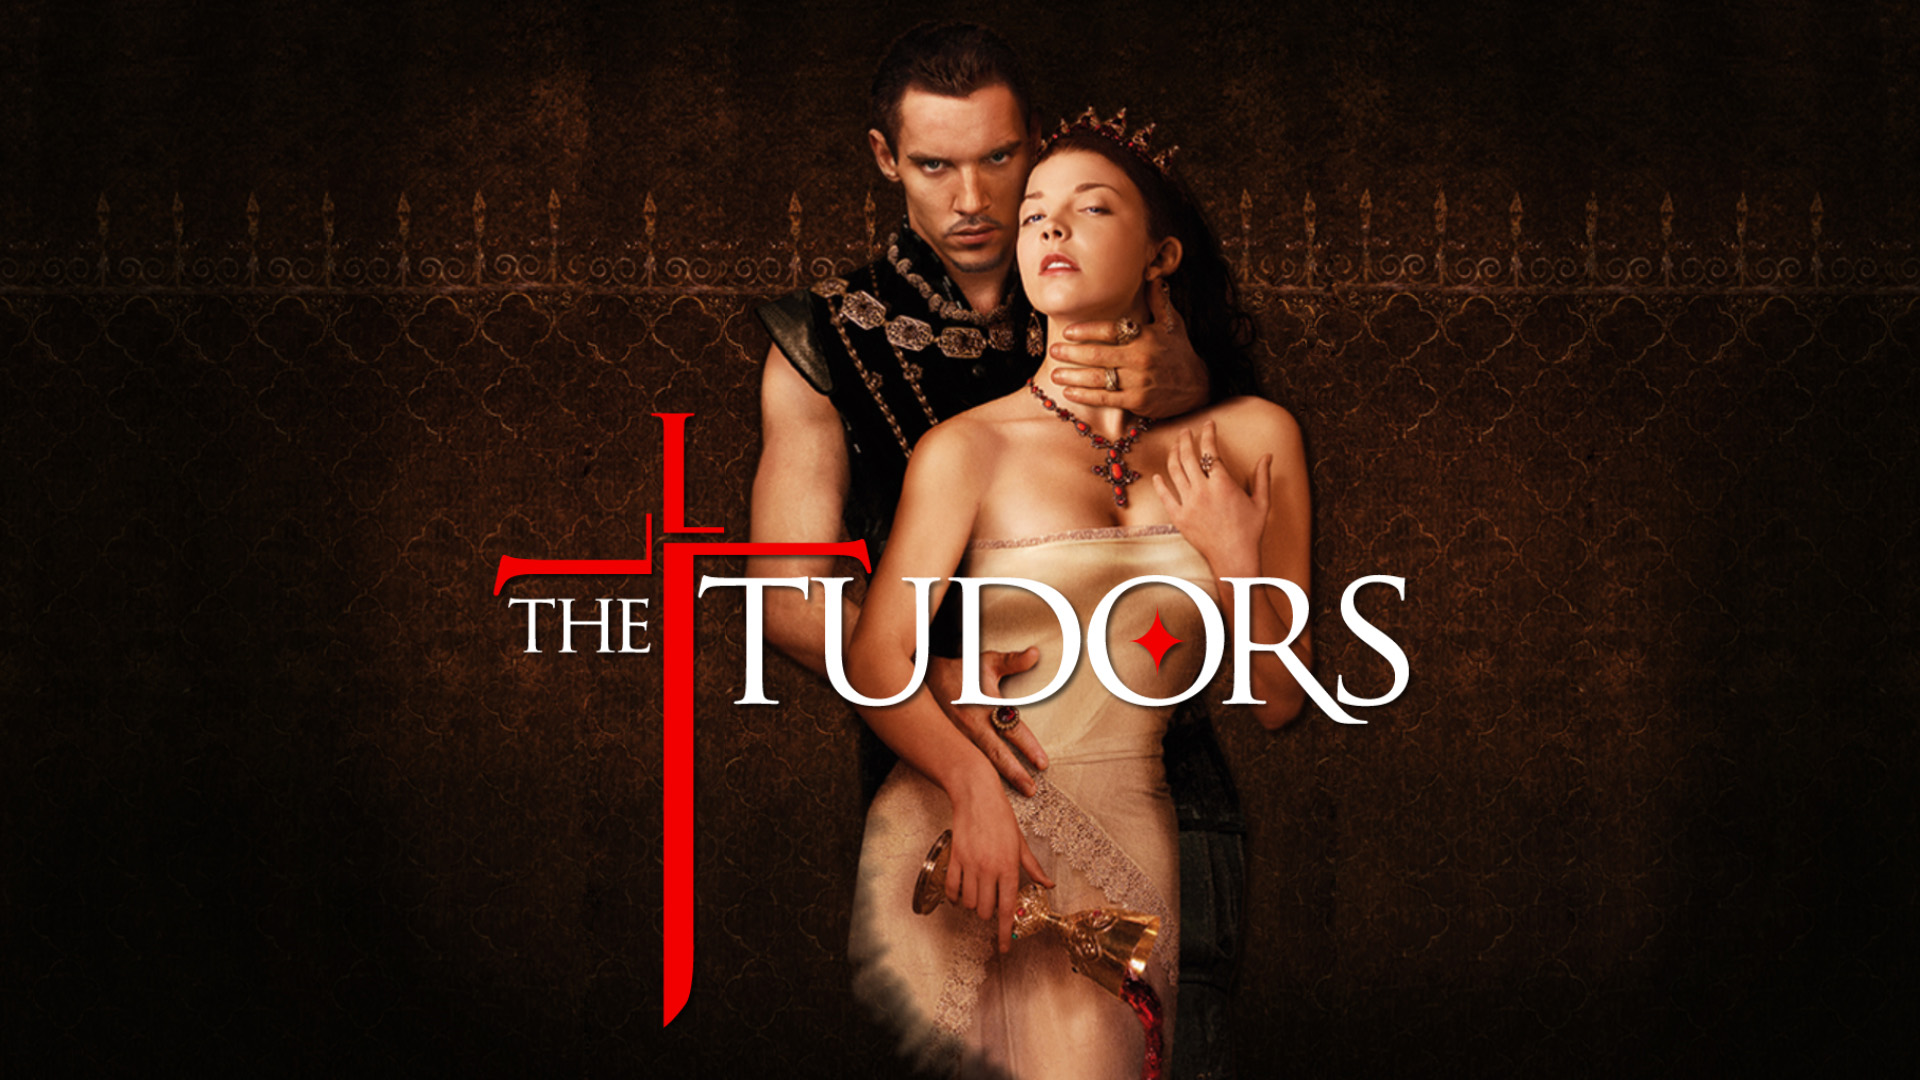 RedeTV! exibirá The Tudors, série inédita na TV aberta  